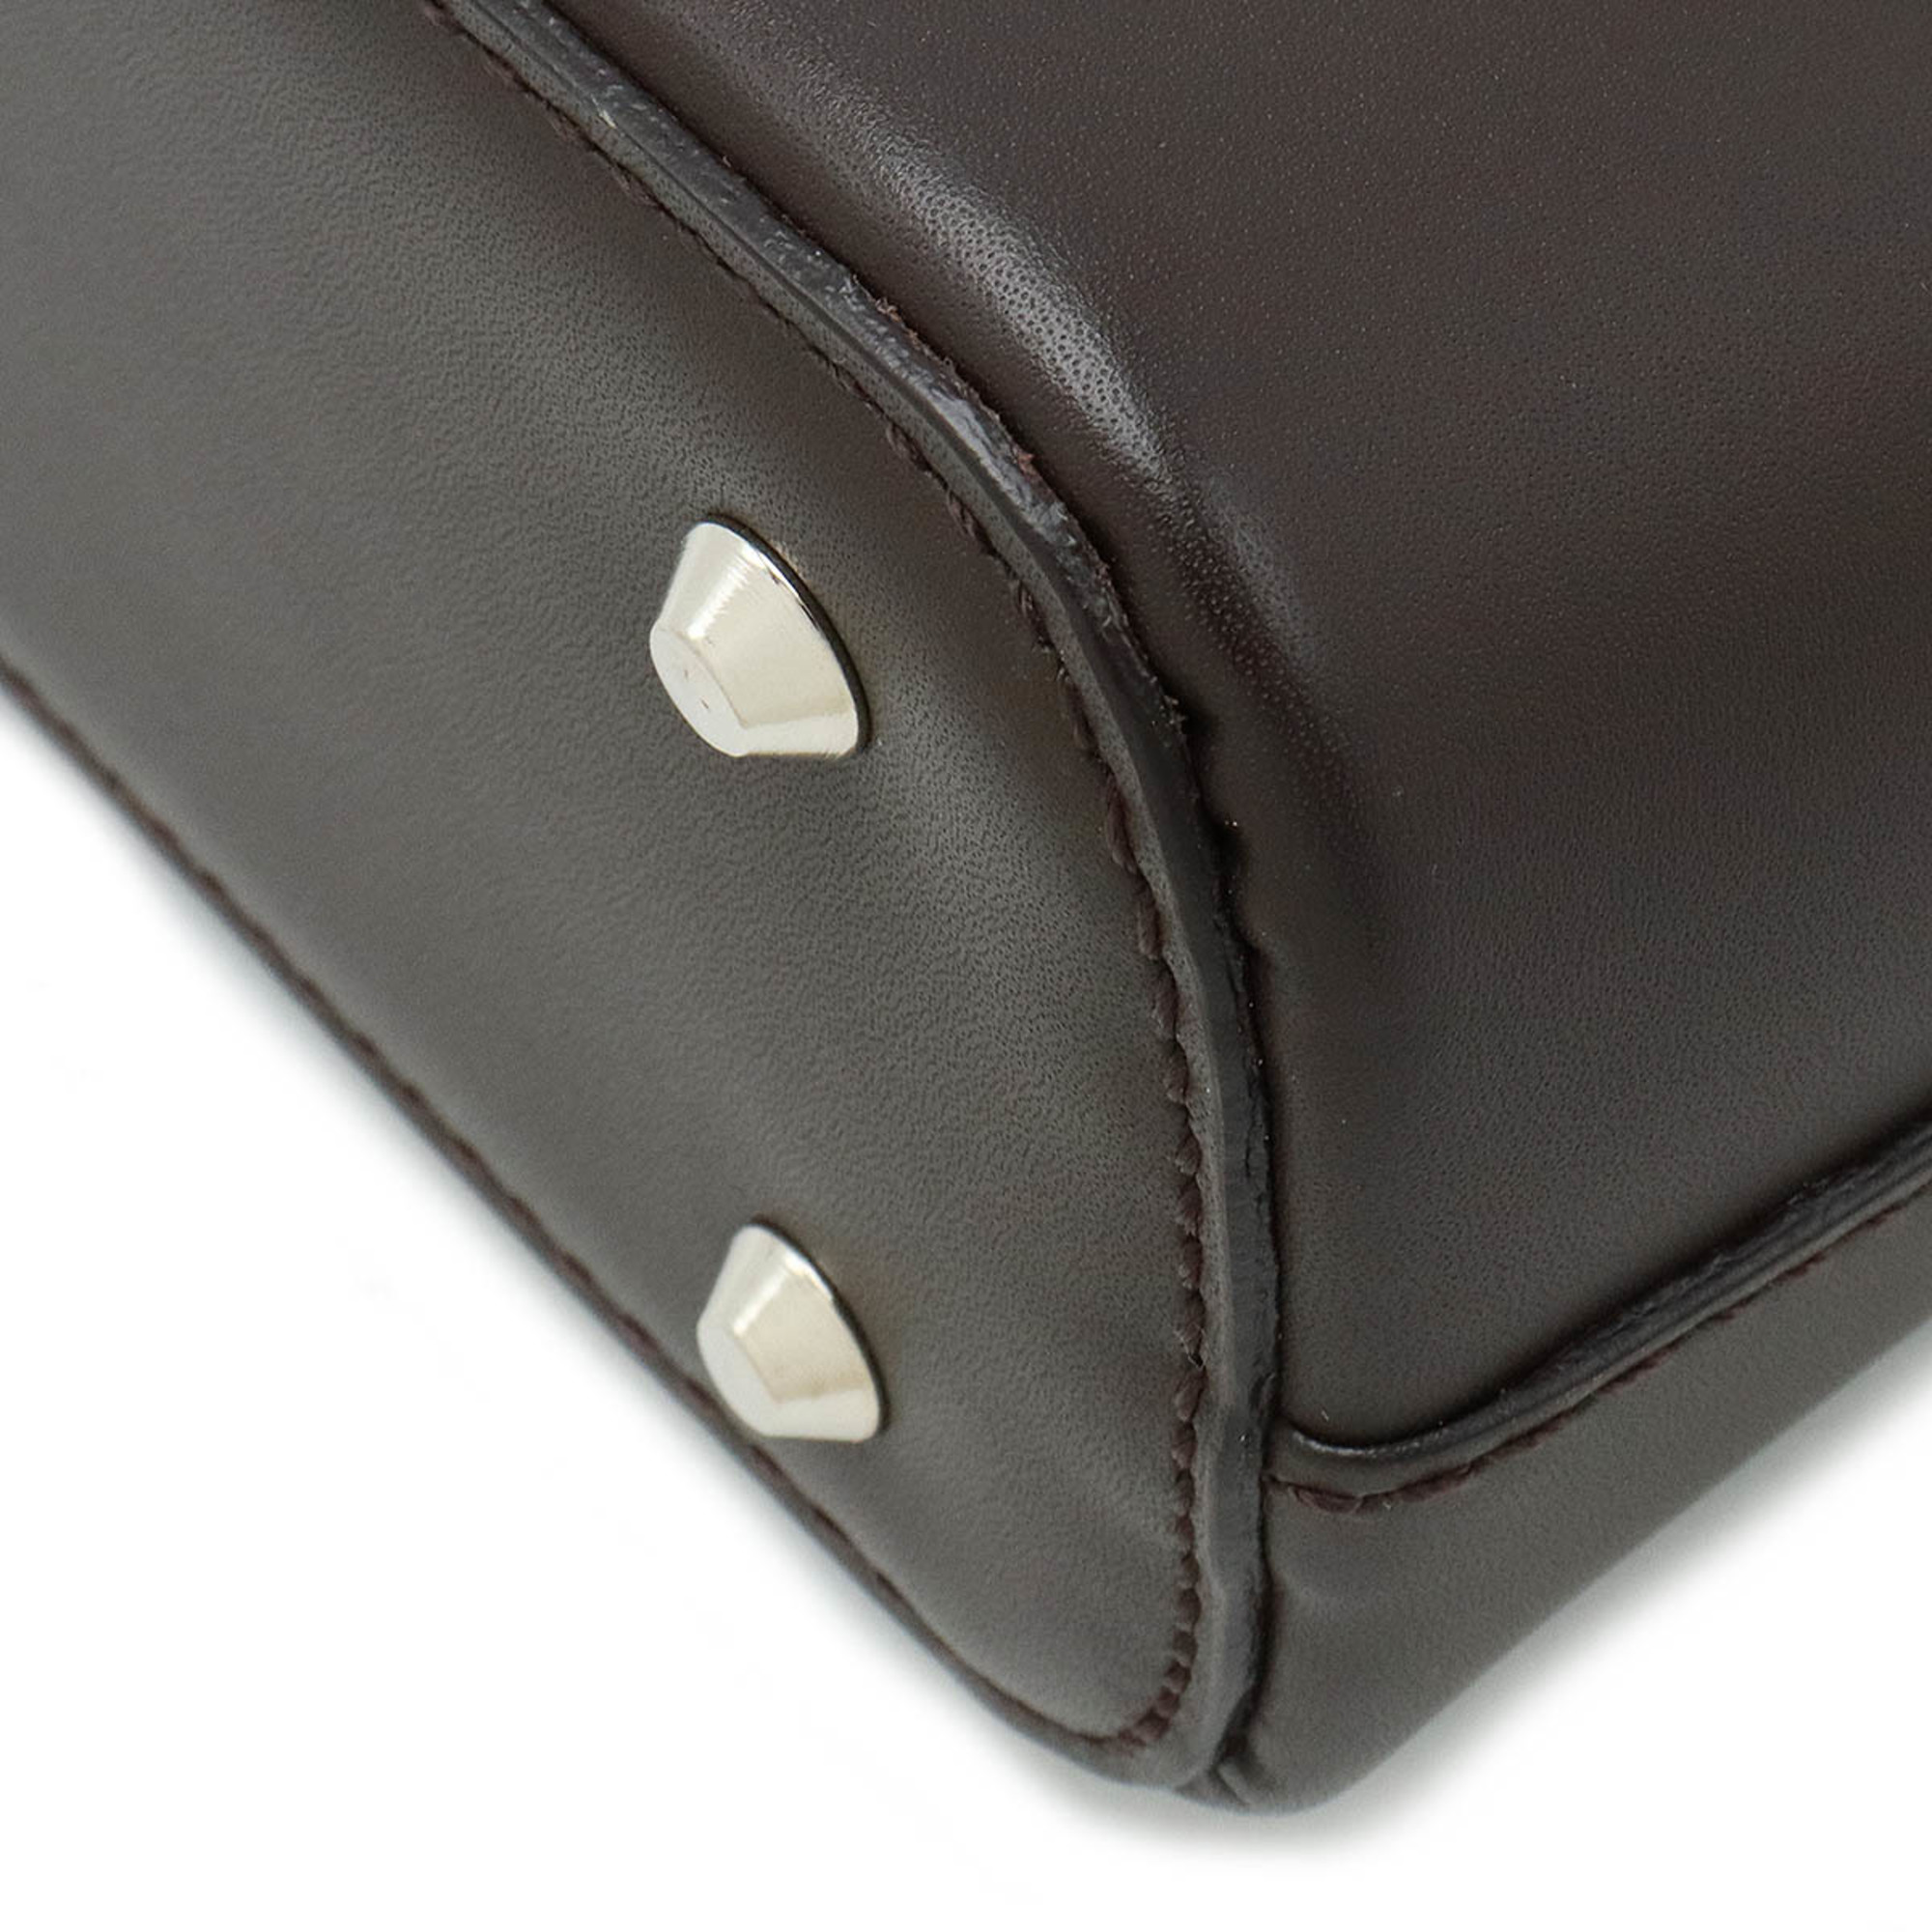 BURBERRY shoulder bag handbag leather dark brown